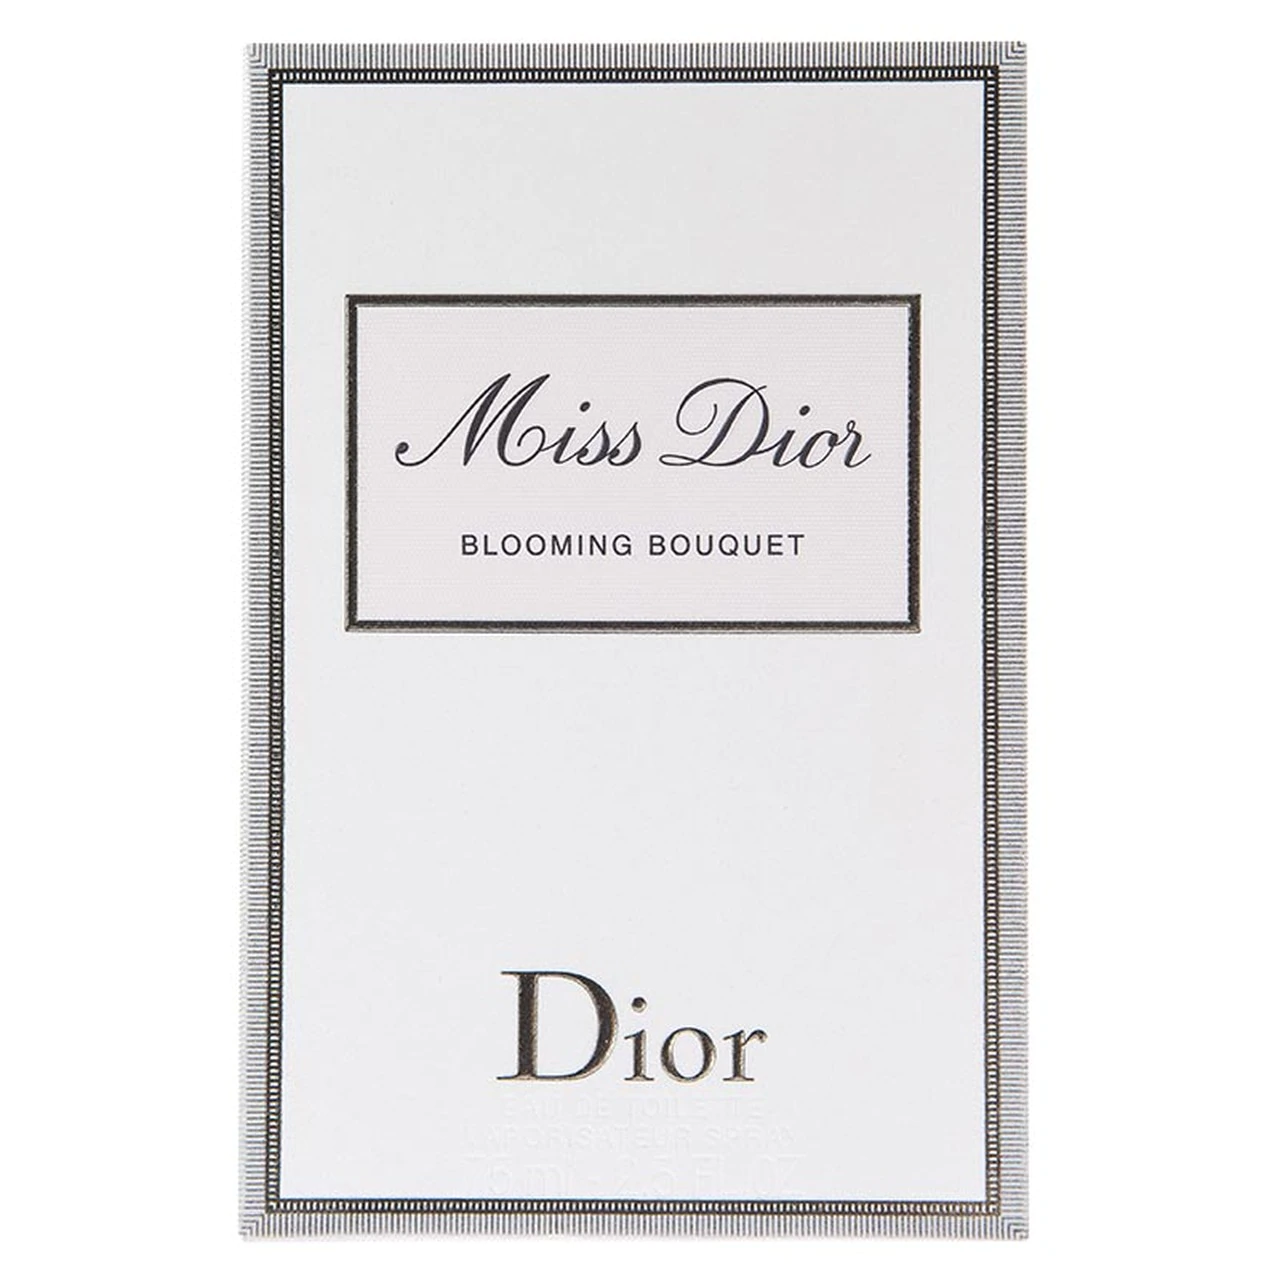 Dior Miss Dior Blooming Bouquet 100ml Eau De Toilette